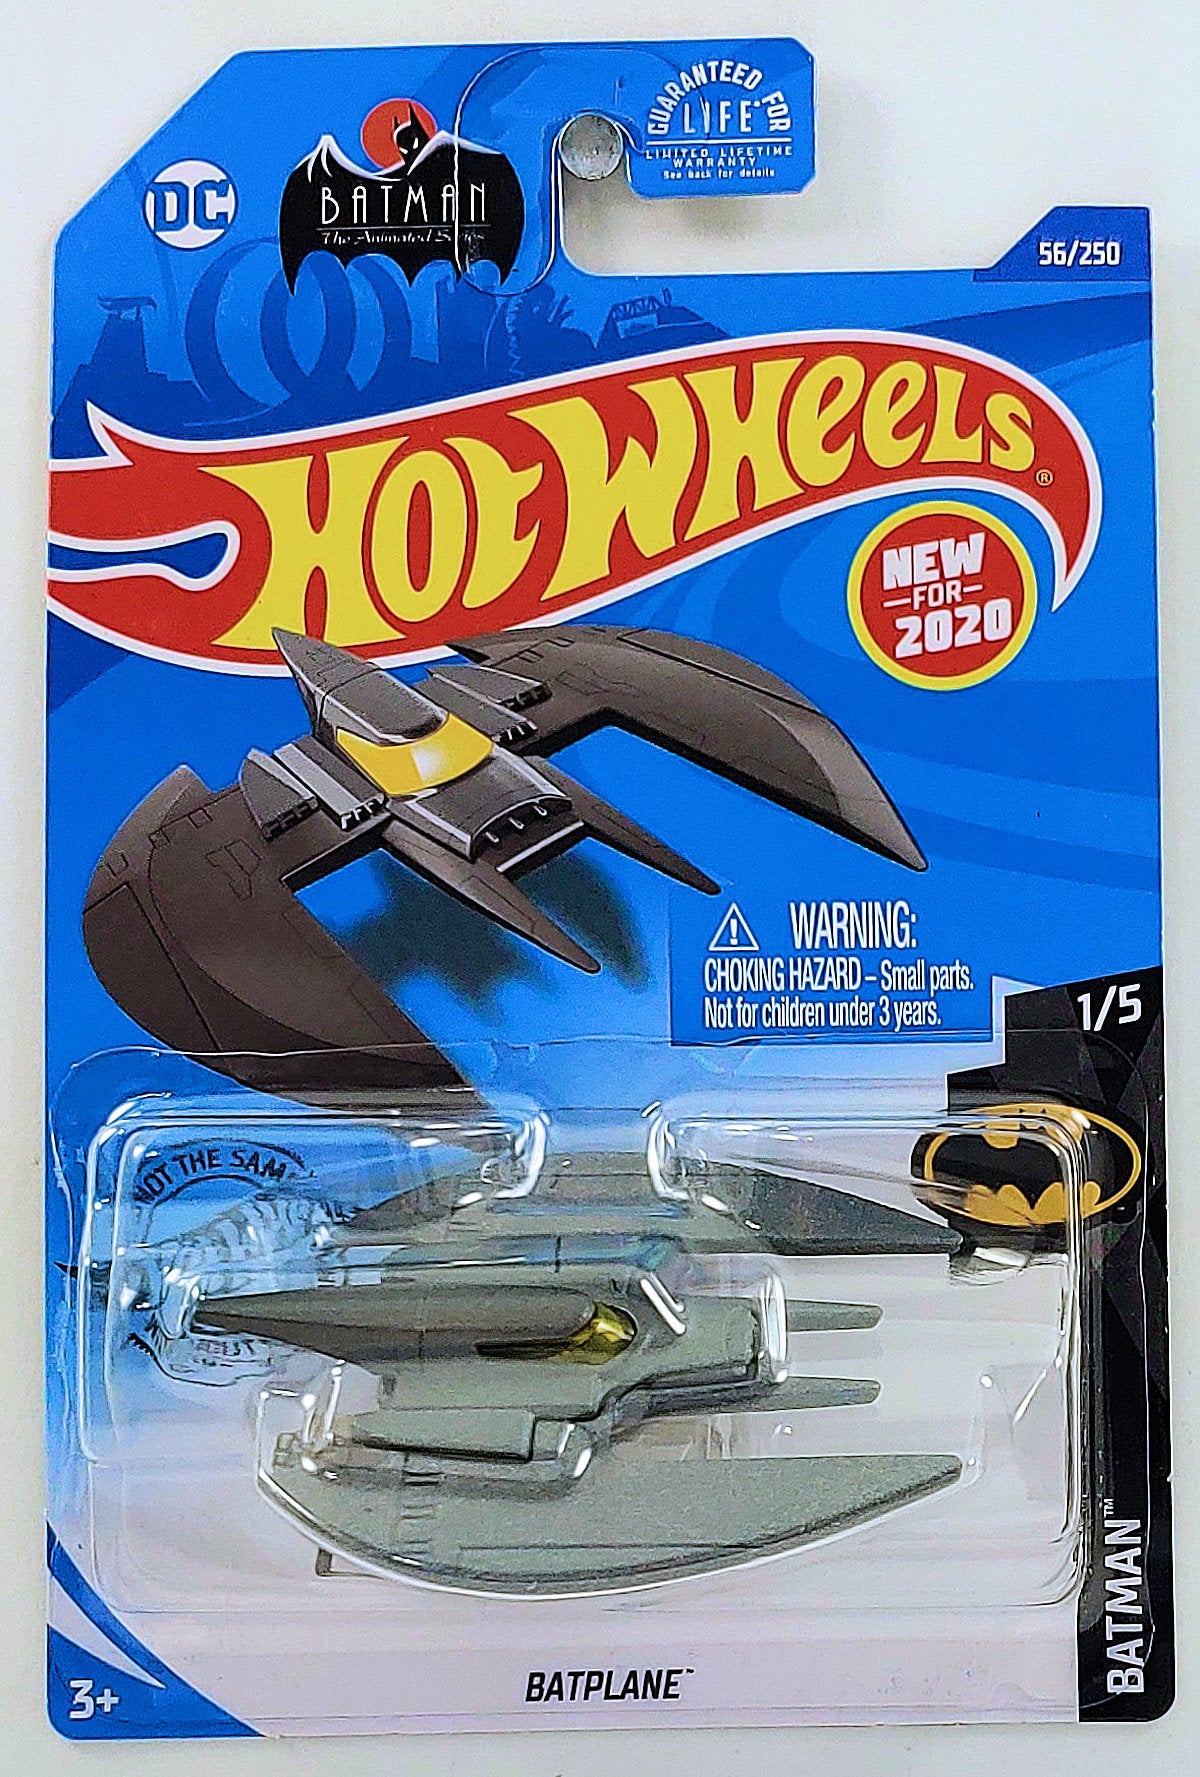 Hot Wheels 2020 - Collector # 056/250 - Batman 1/5 - New Models - Batplane - Metallic Gray